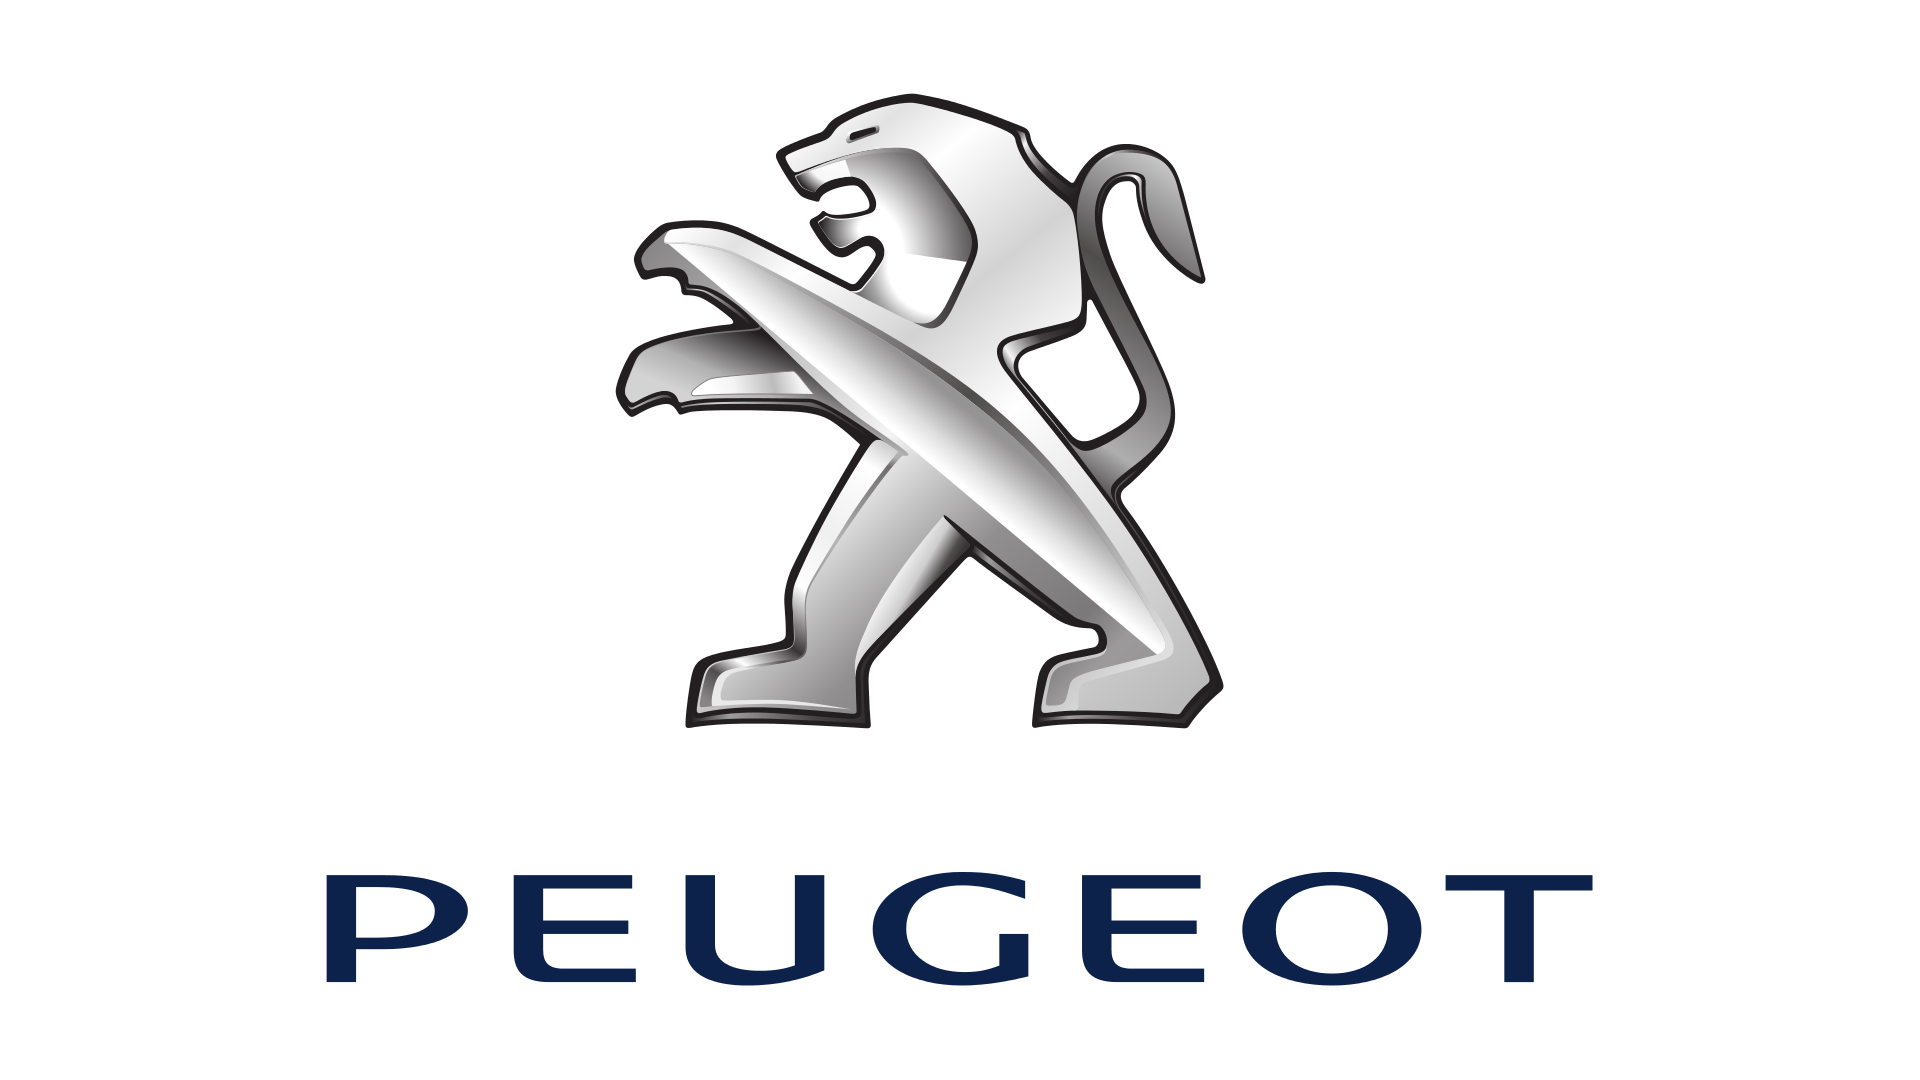 www.carlogos.org/logo/Peugeot-logo-2010-1920x1080.png